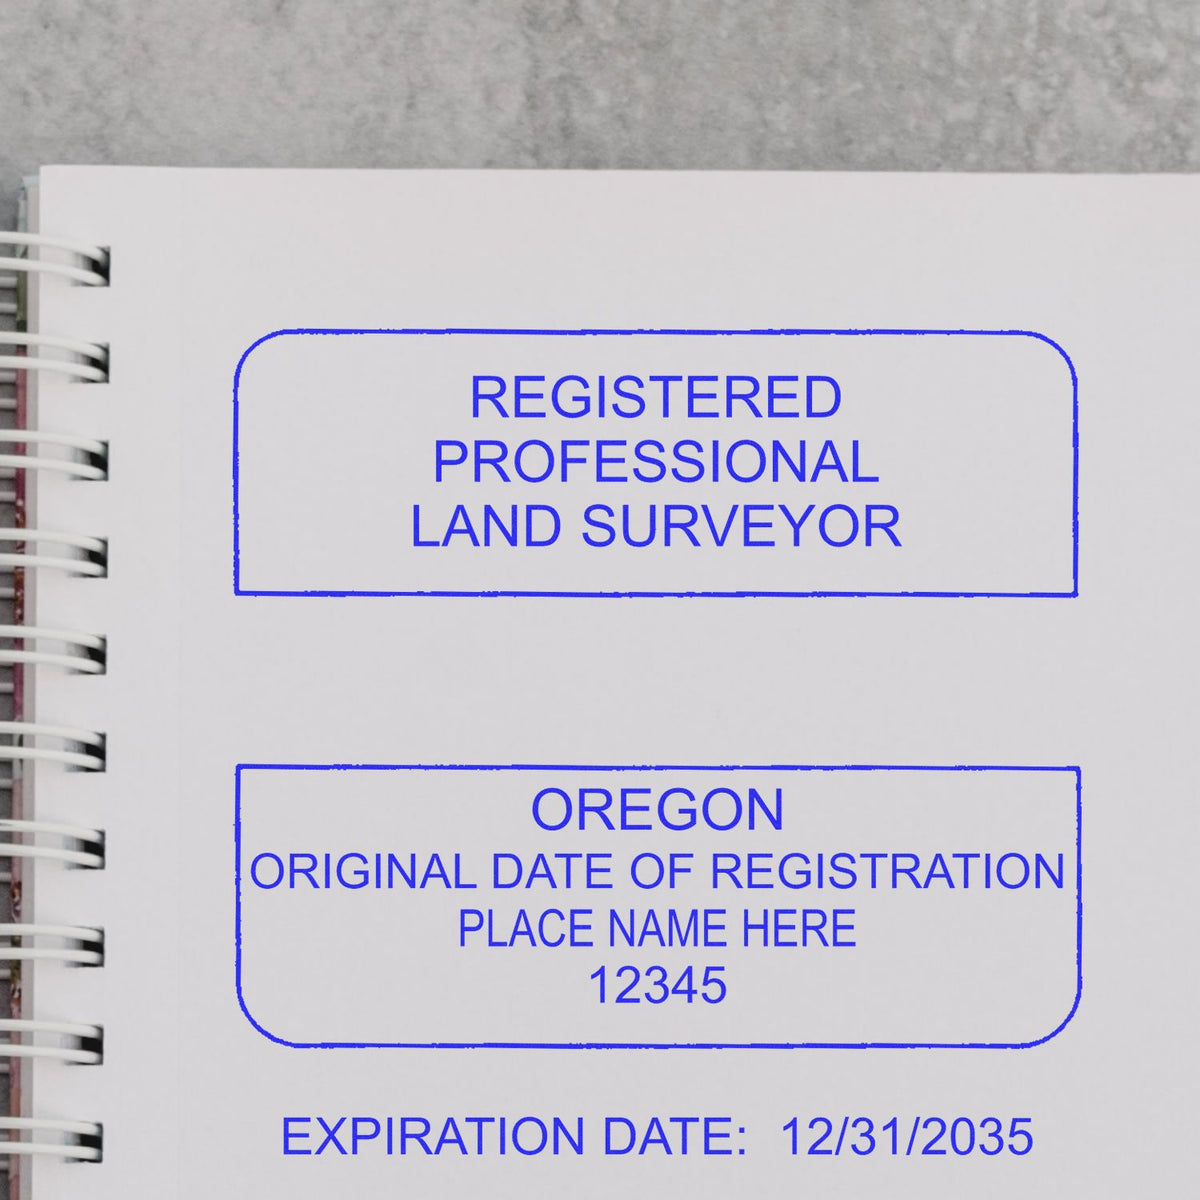 Oregon Land Surveyor Seal Stamp In Use Photo